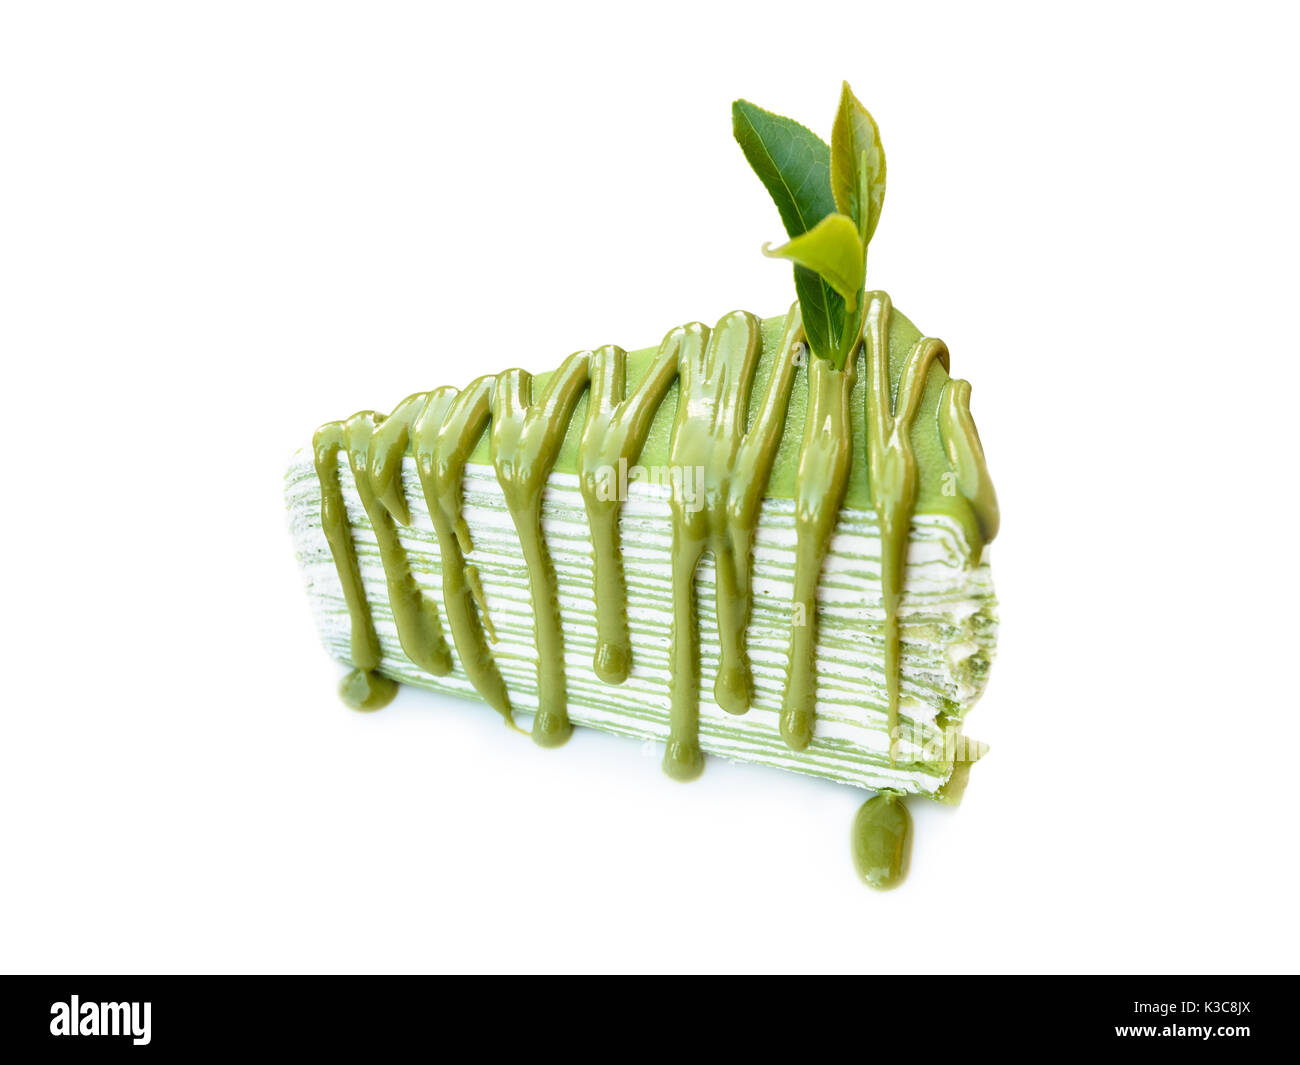 Geschlossen bis grüner Tee Blatt auf Kuchen mit Matcha grüner Tee, auf weißem Hintergrund Stockfoto